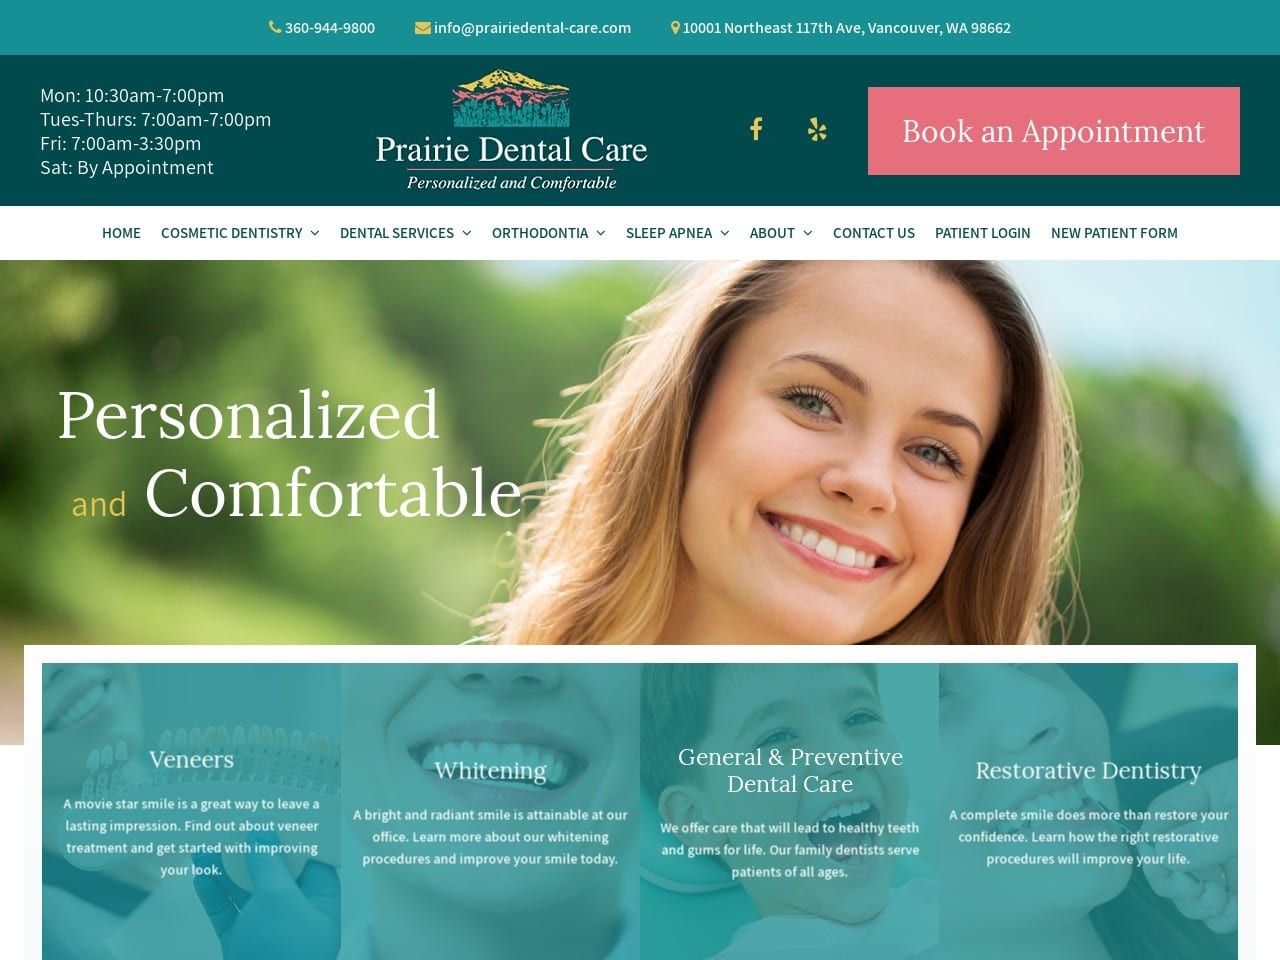 Prairie Dental Care Website Screenshot from prairiedental-care.com